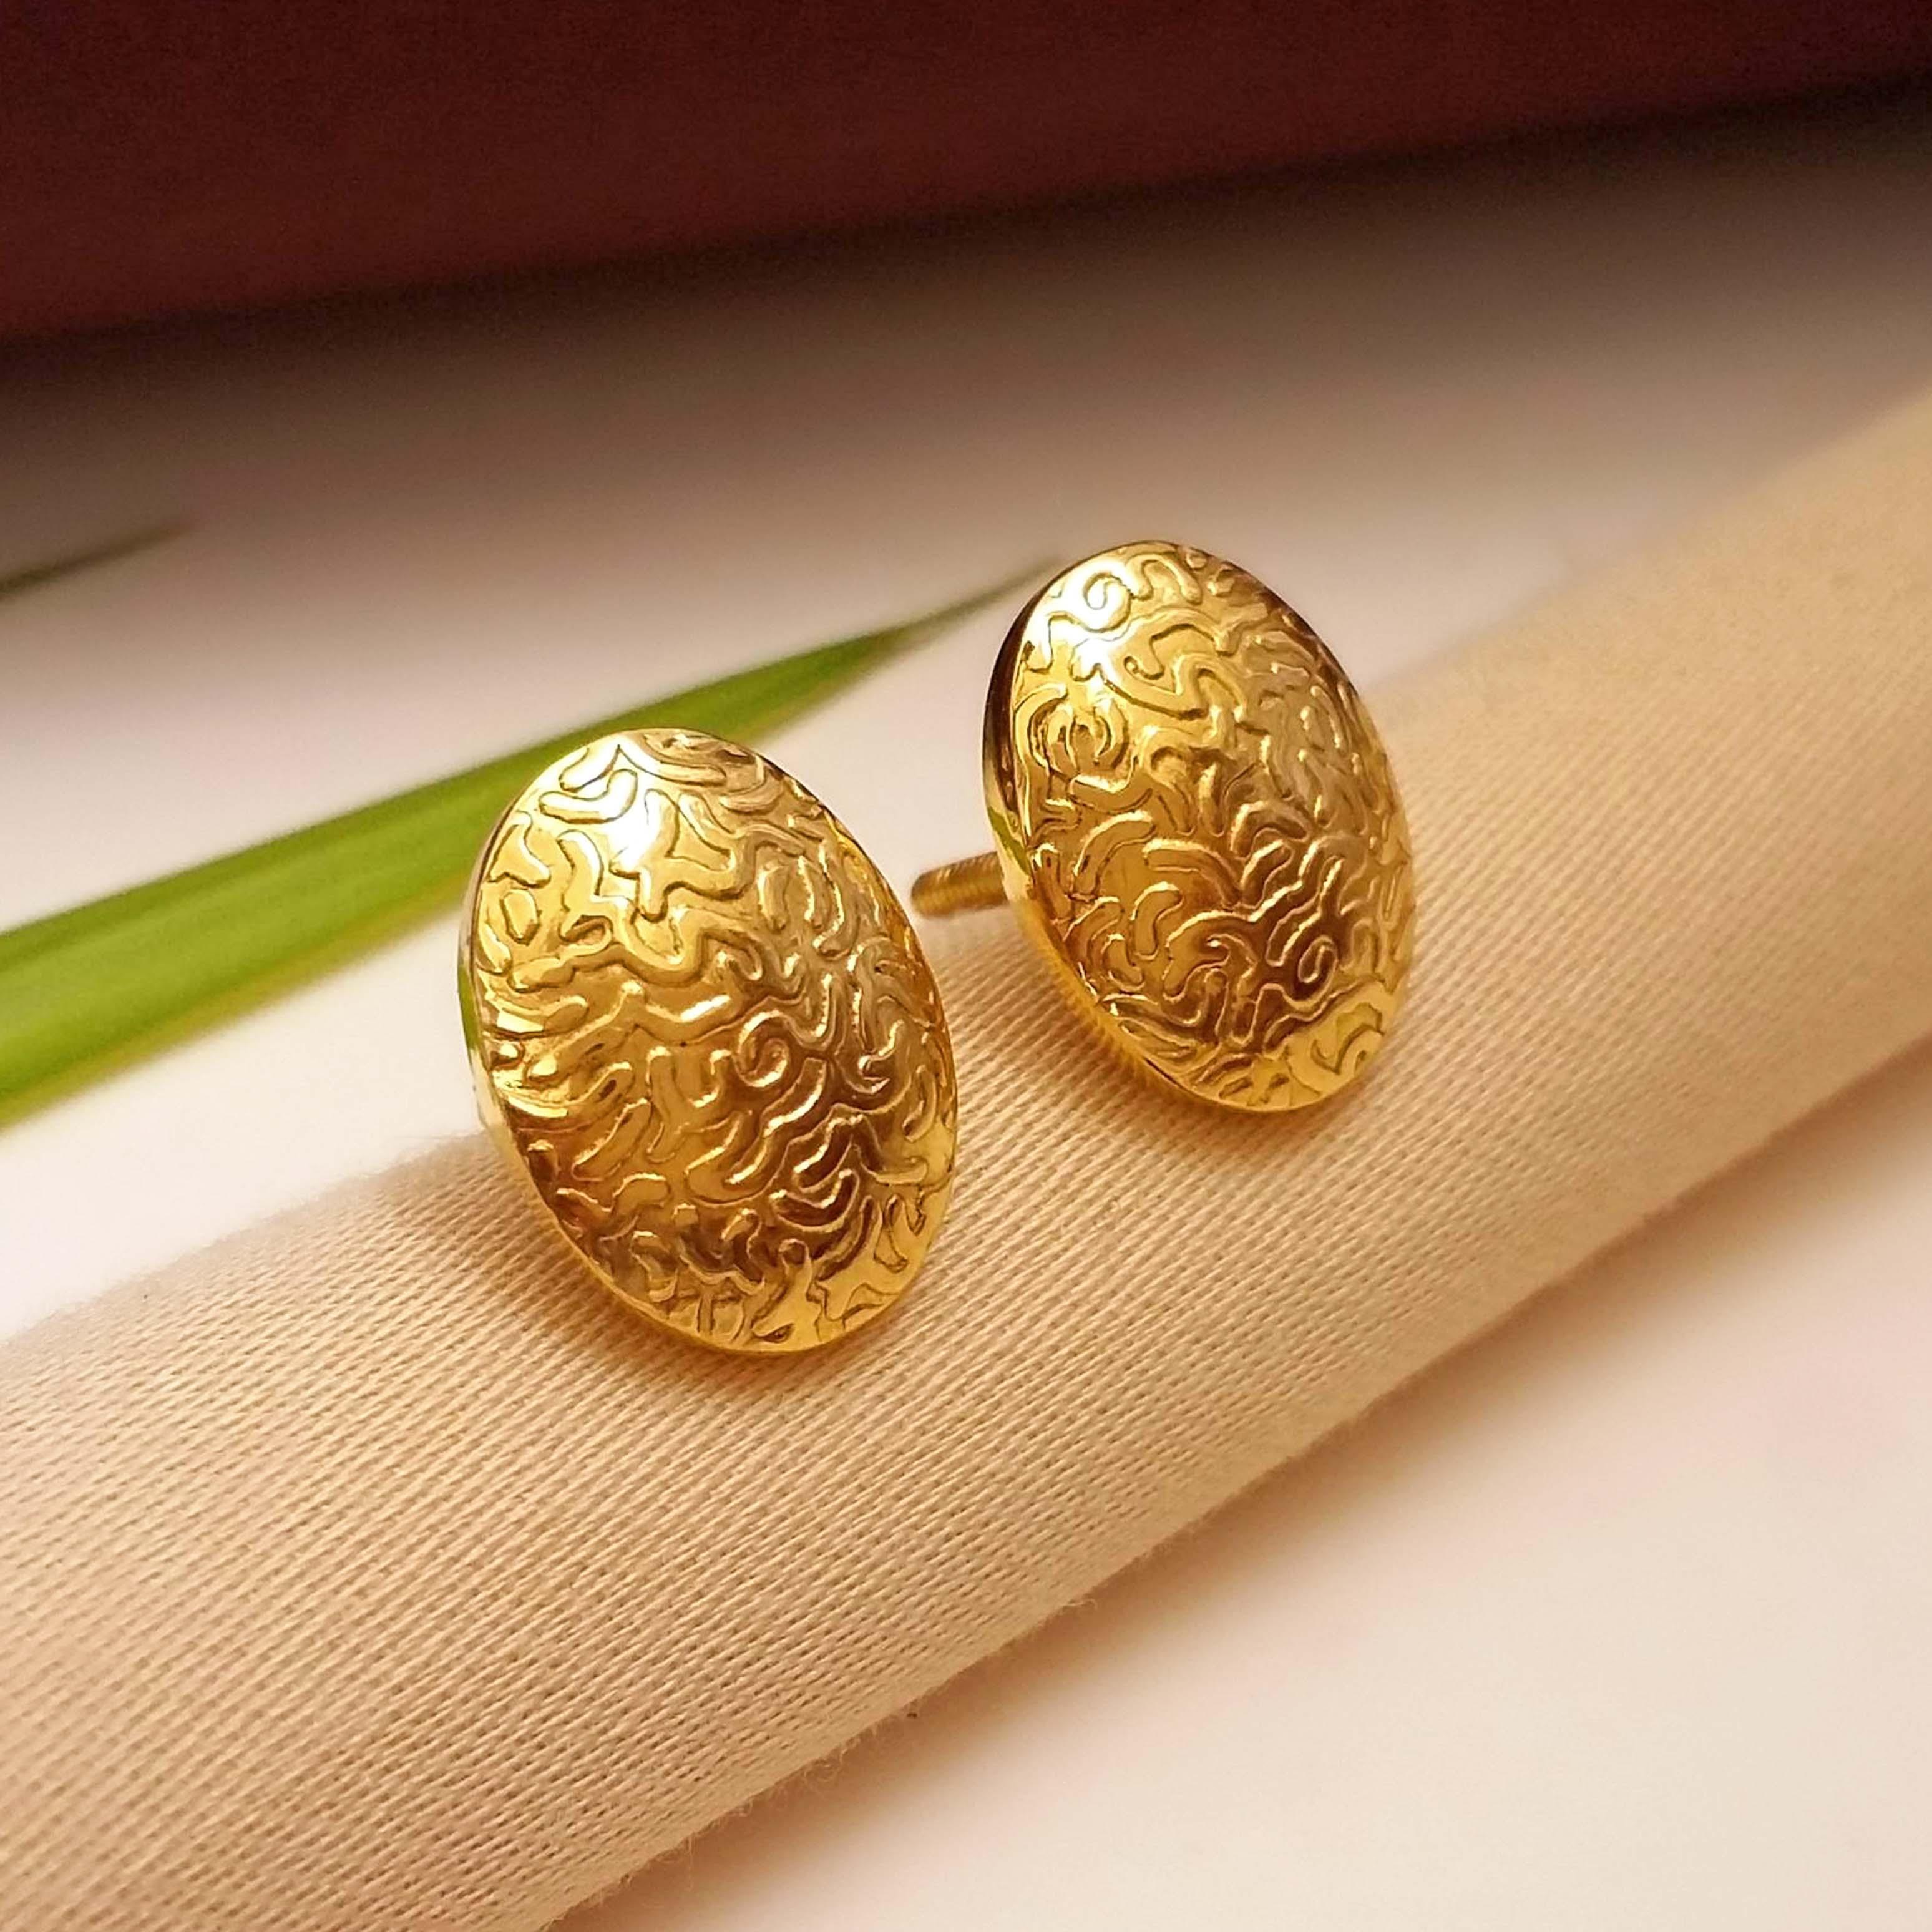 Details more than 201 best gold earrings for men